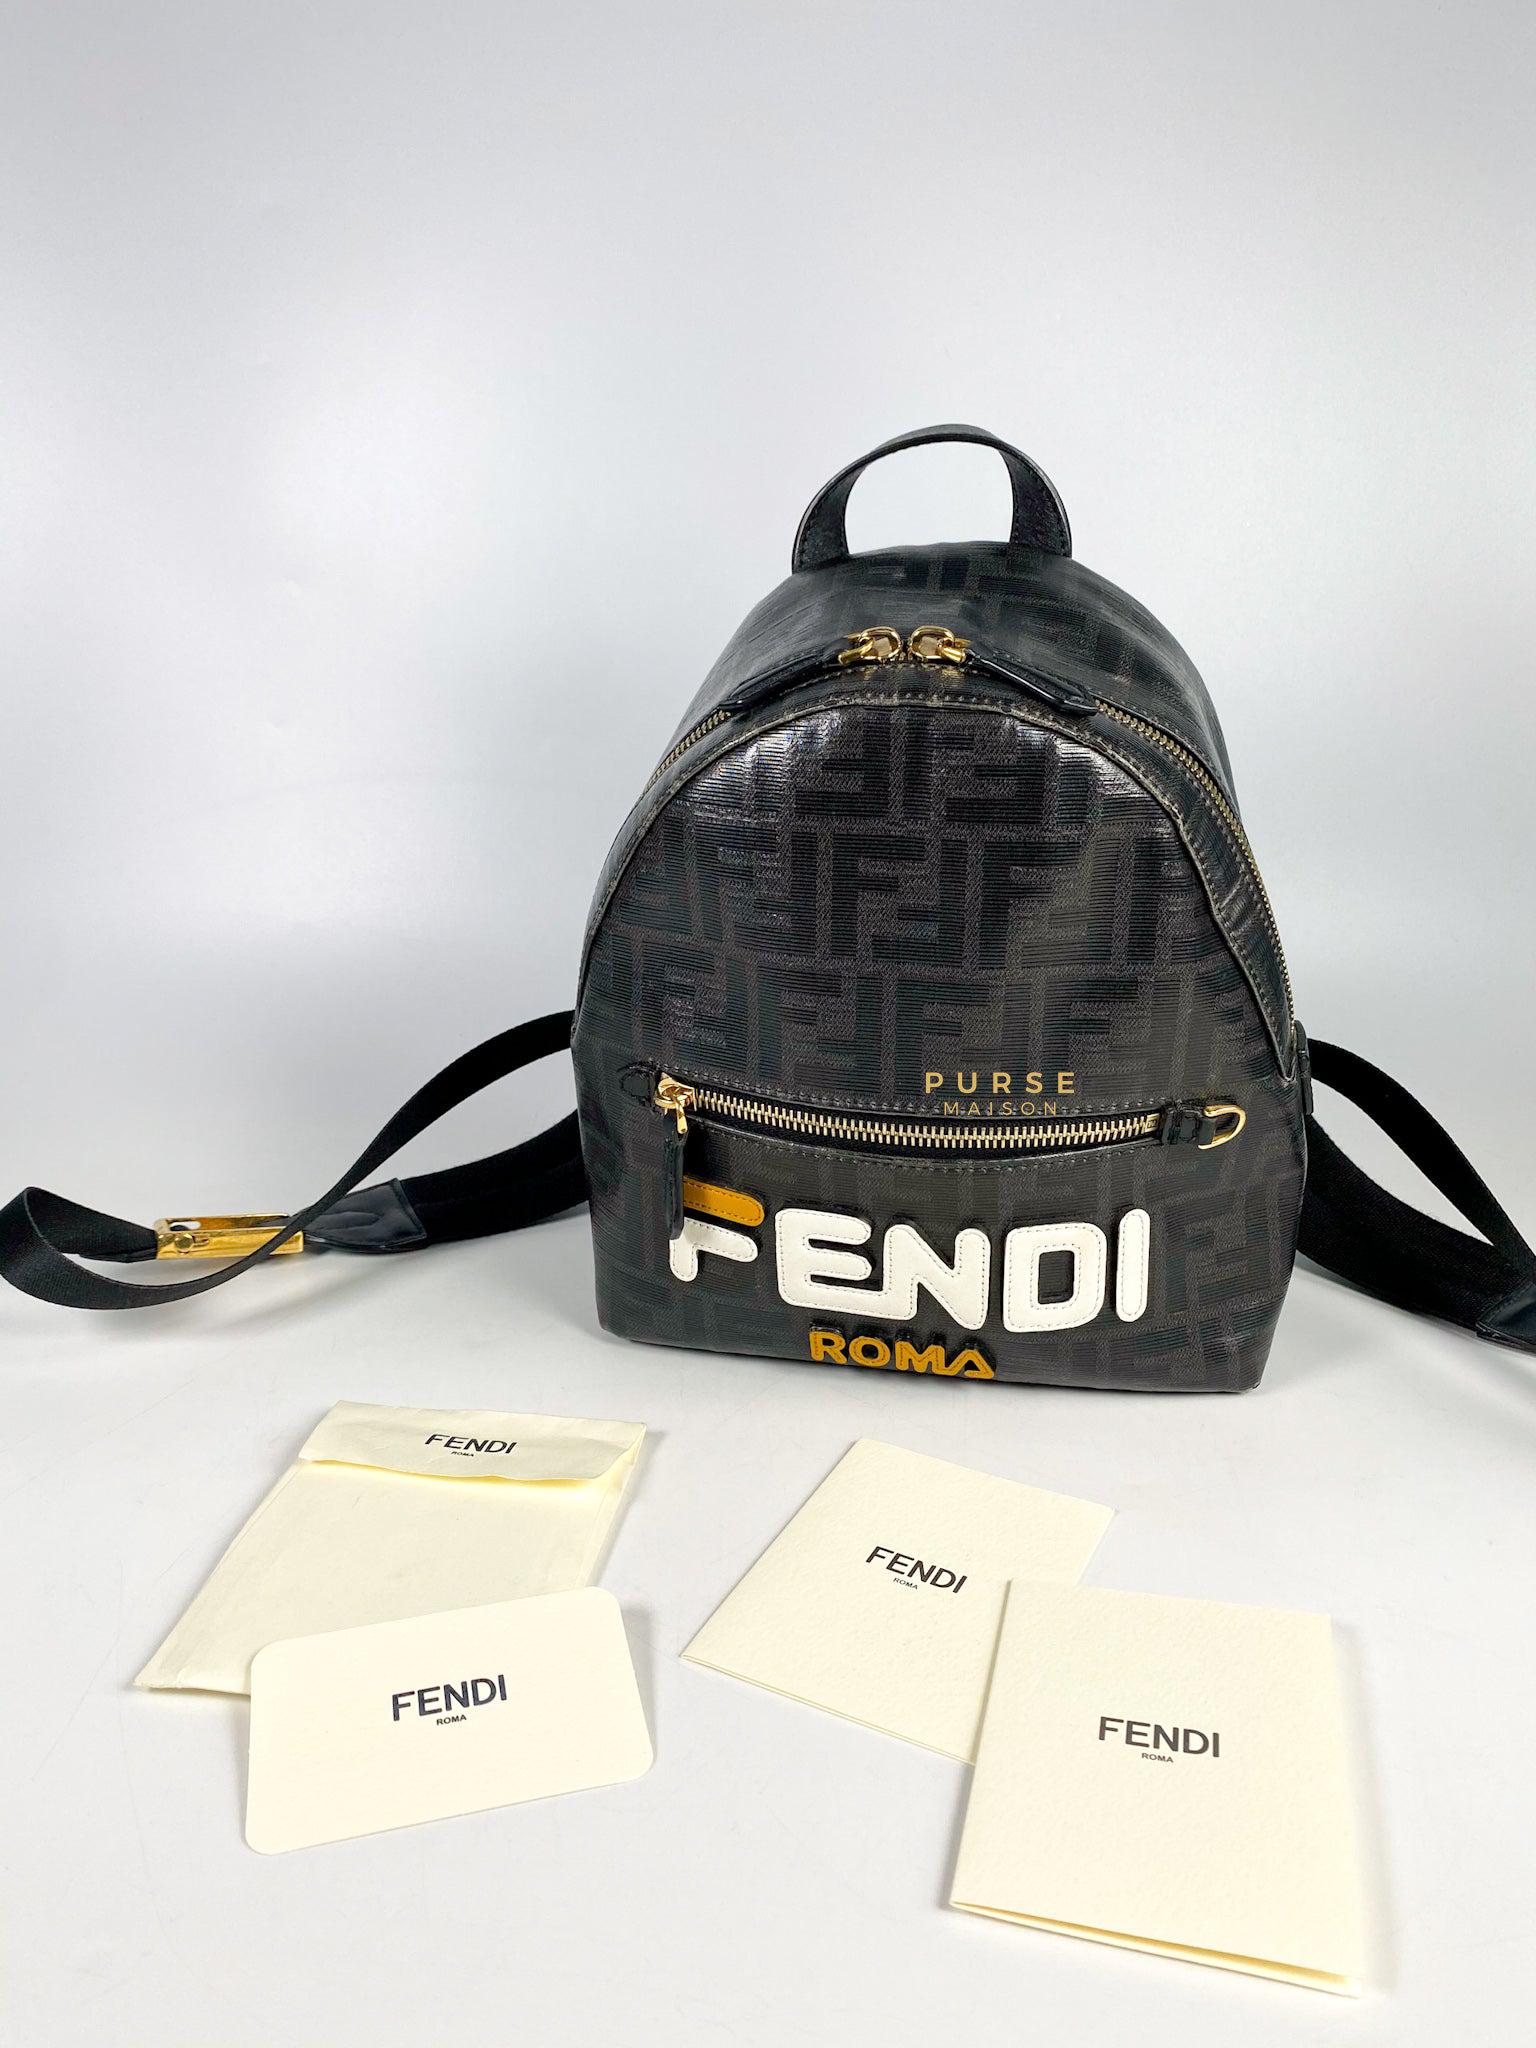 Fendi Mania Black Backpack